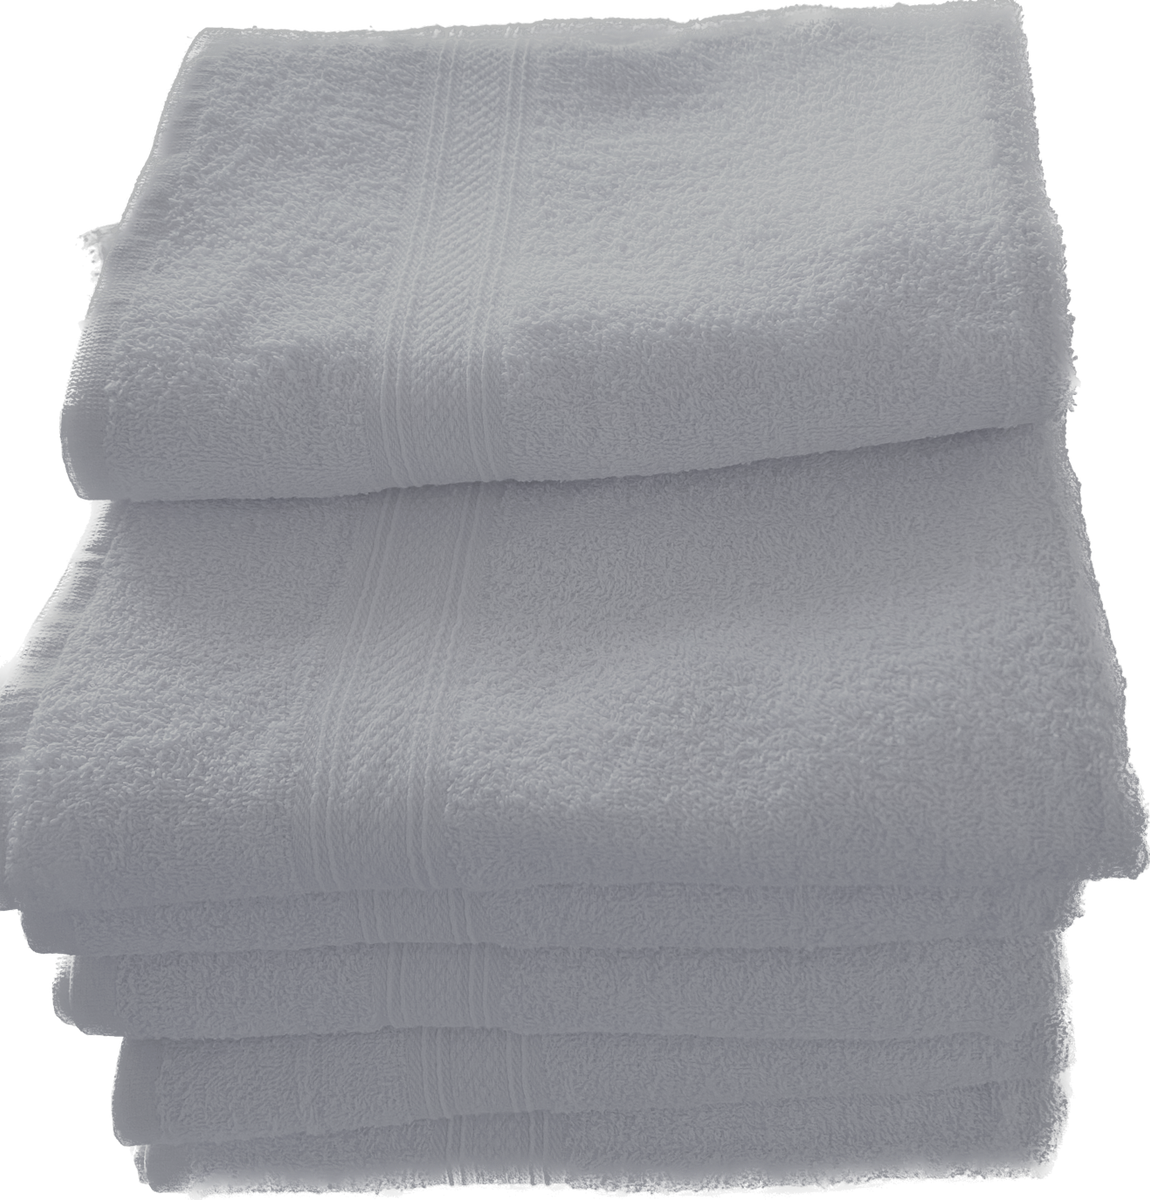 22x44-Premium Charcoal Grey Bath towels 100% Cot